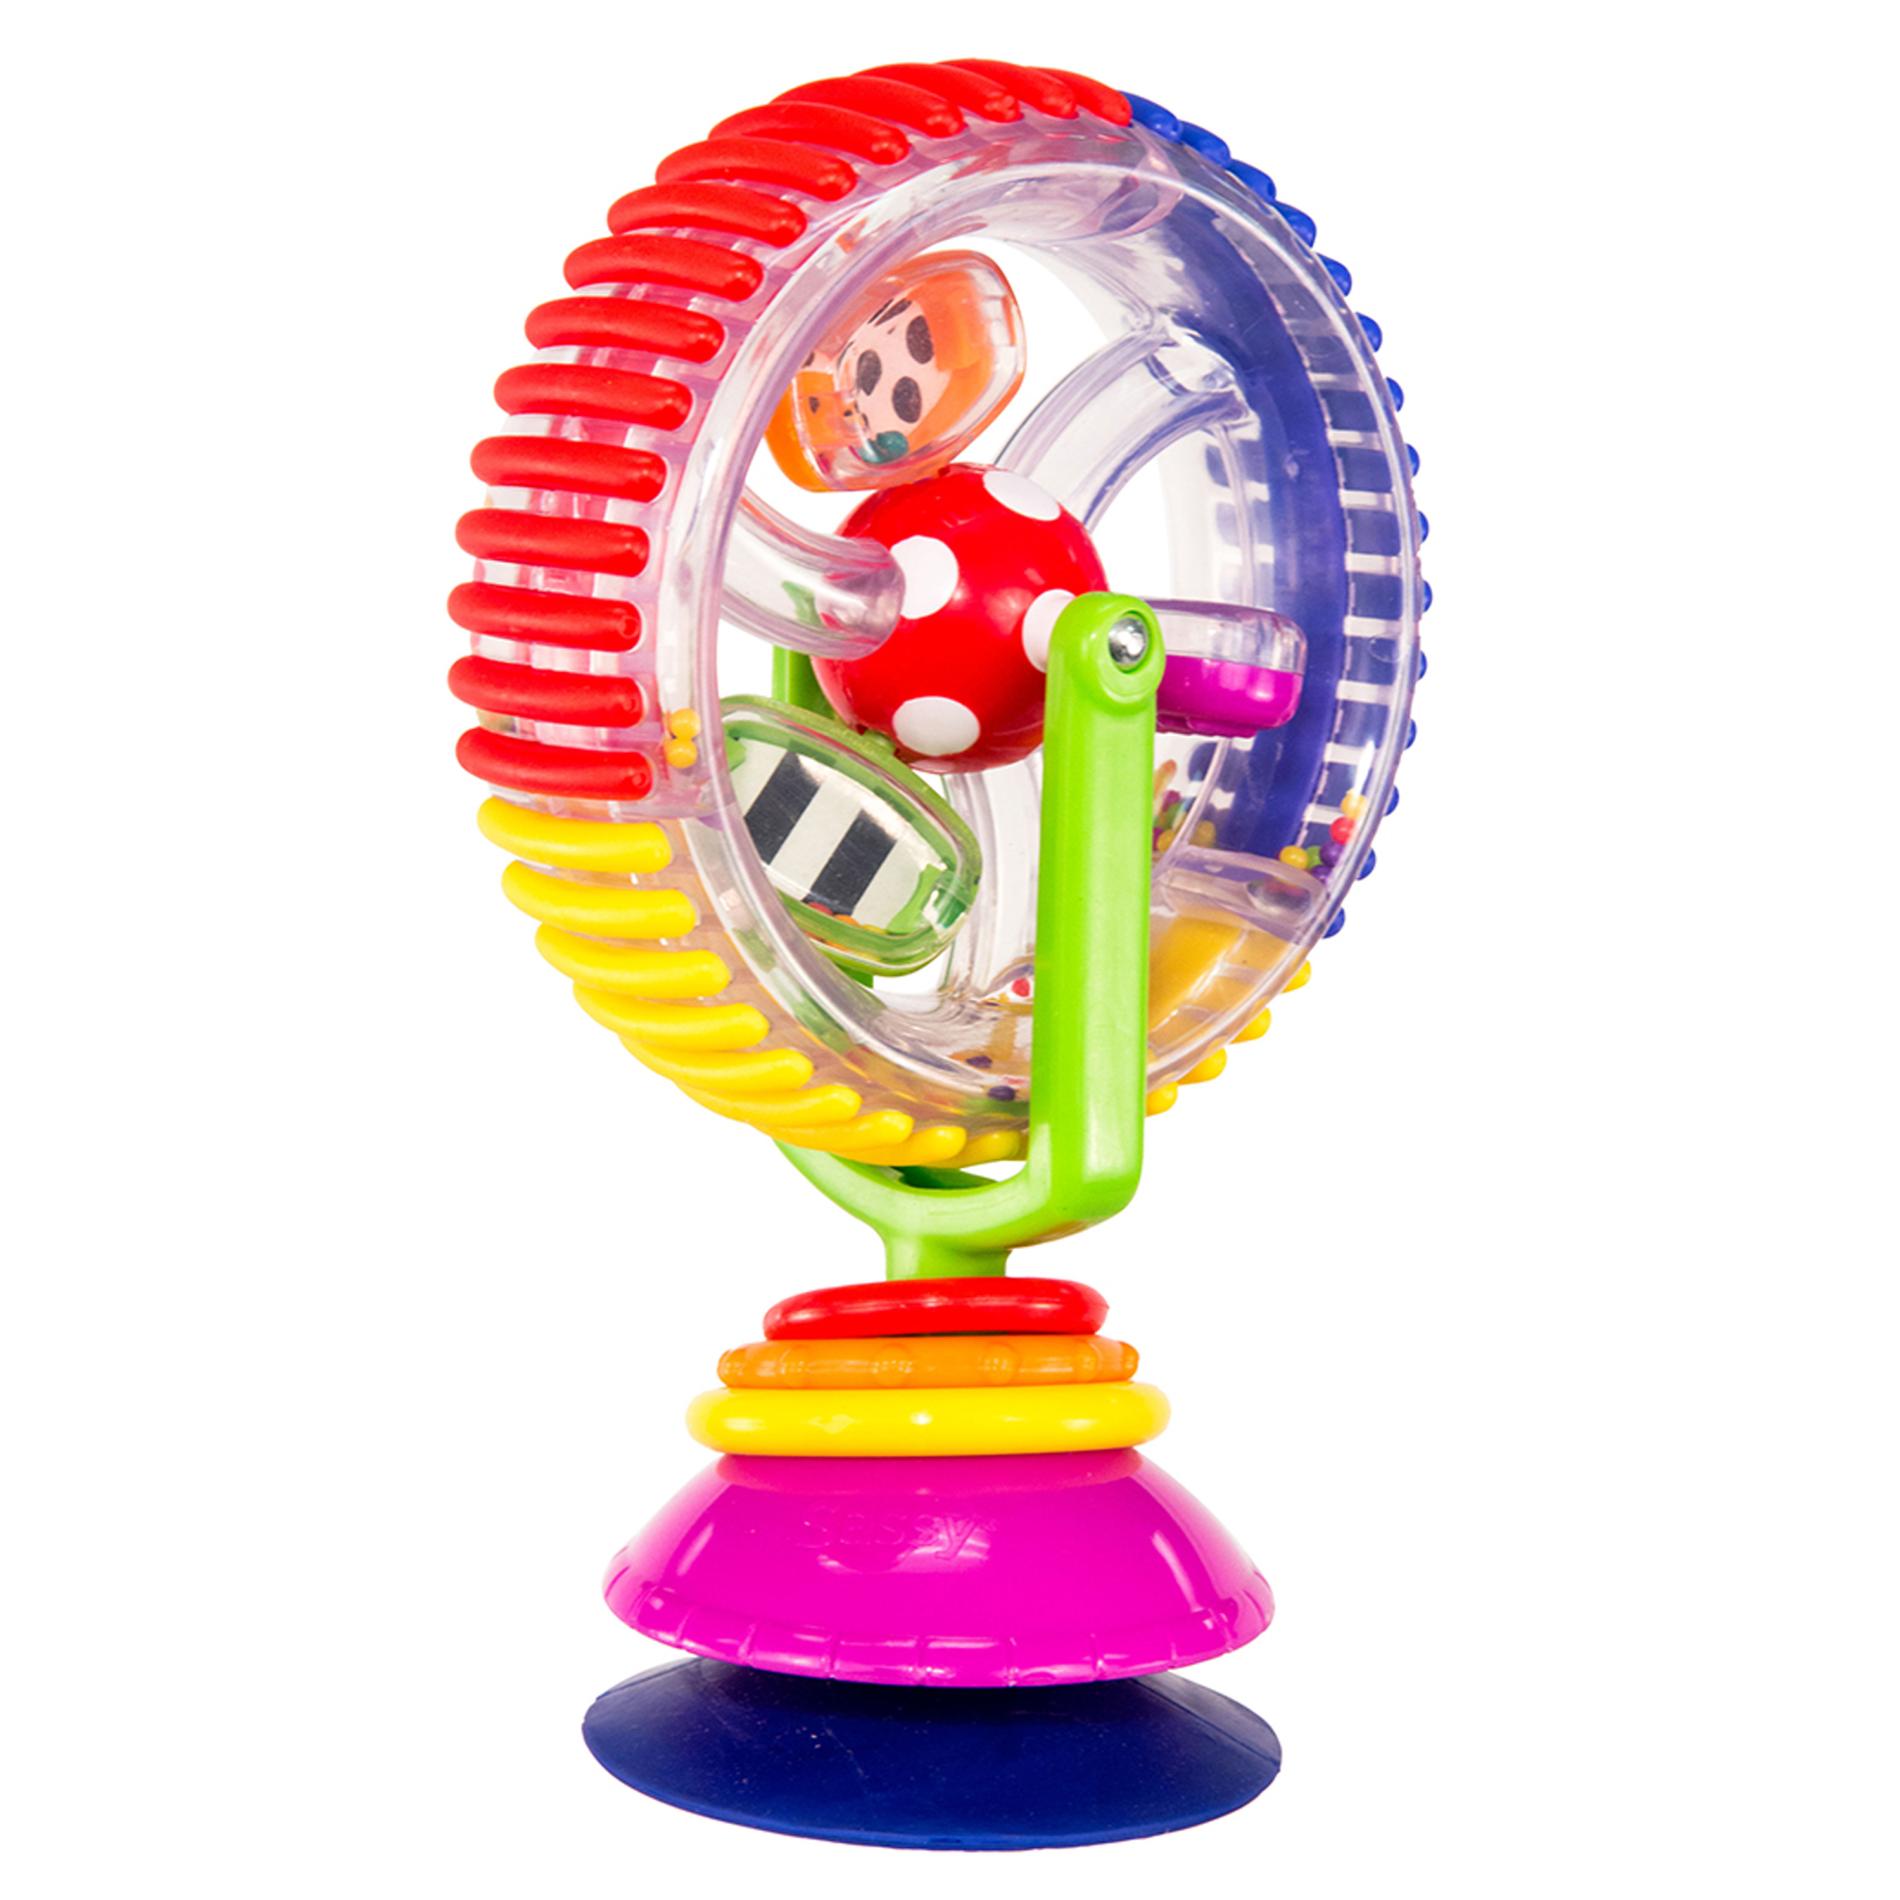 Sassy Infant's Wonder Wheel Toy